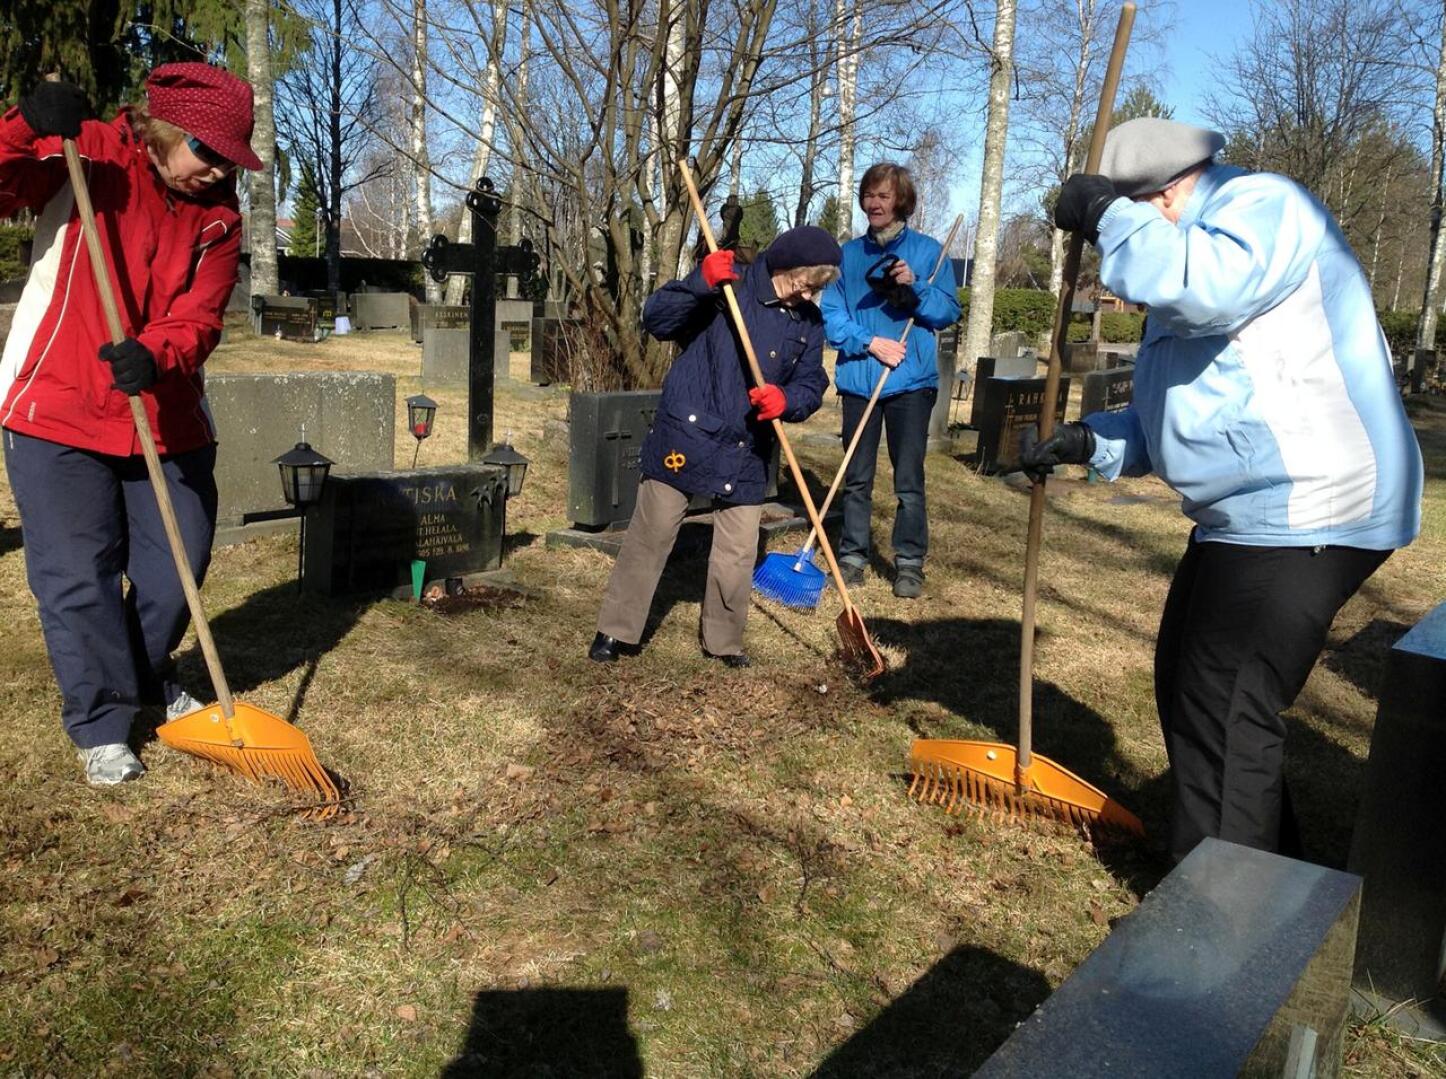 Ylivieskan seurakunnan omat työntekijät hoitavat mitä todennäköisimmin hautausmaiden kevätsiivoukset. Perinteisesti on pidetty siivoustalkoot, jossa ahkerimpia ovat yli 70-vuotiaat vapaaehtoiset. Kuva vuodelta 2013.